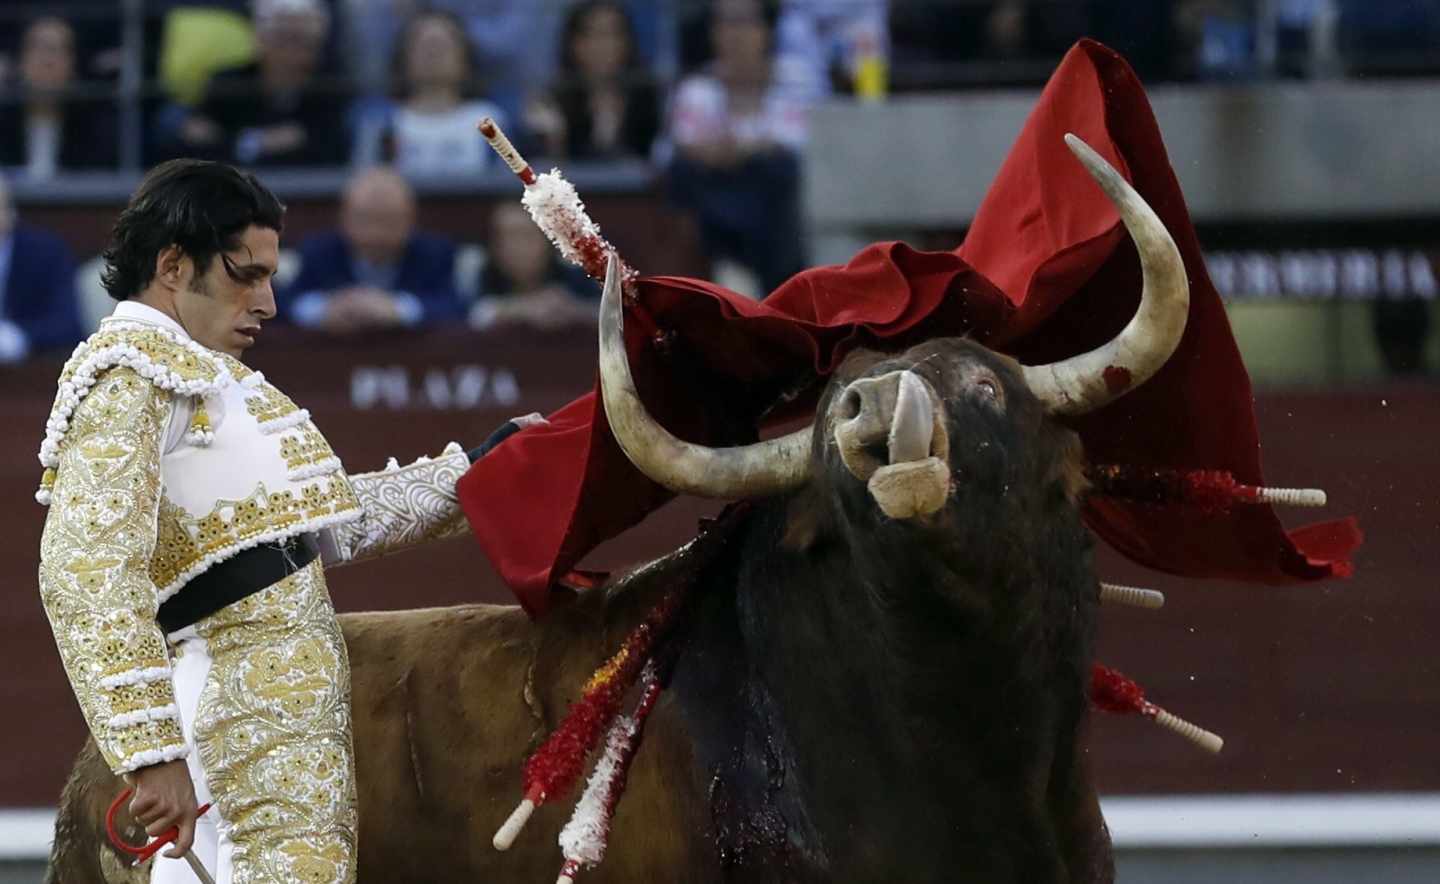 El diestro extremeño Alejandro Talavante, en su segundo toro "Rosito" de la ganadería de Núñez del Cuvillo, durante el noveno festejo de la Feria de San Isidro, en la plaza de Toros de Las Ventas .